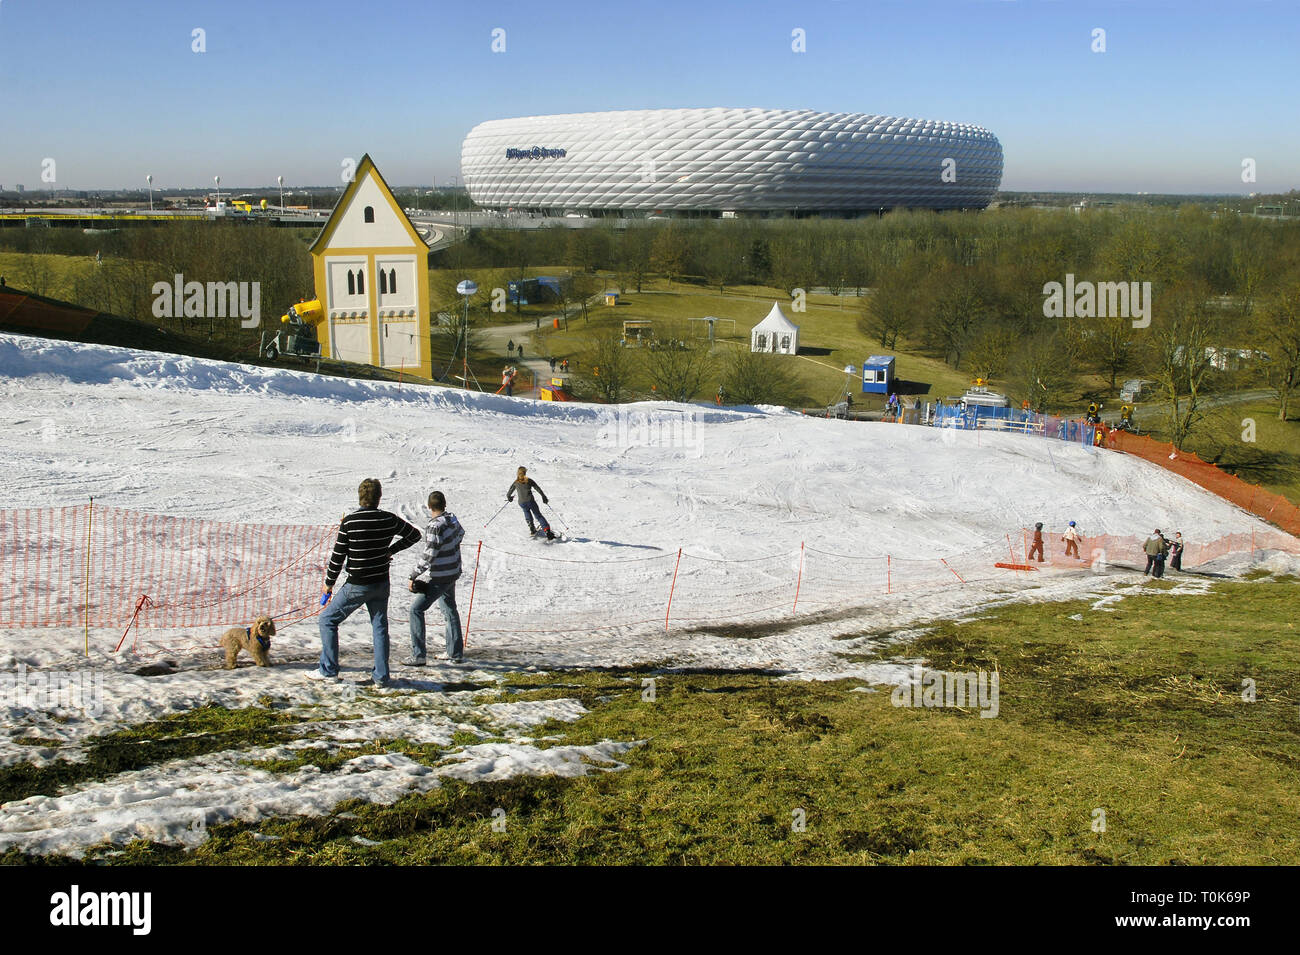 Géographie / voyage, Allemagne, Munich, l'Allianz Arena, vue de la station de ski arena au Froettmaning hill, neige artificielle à 18 degré Celsius de plus, 24.02.2008, Additional-Rights Clearance-Info-Not-Available- Banque D'Images